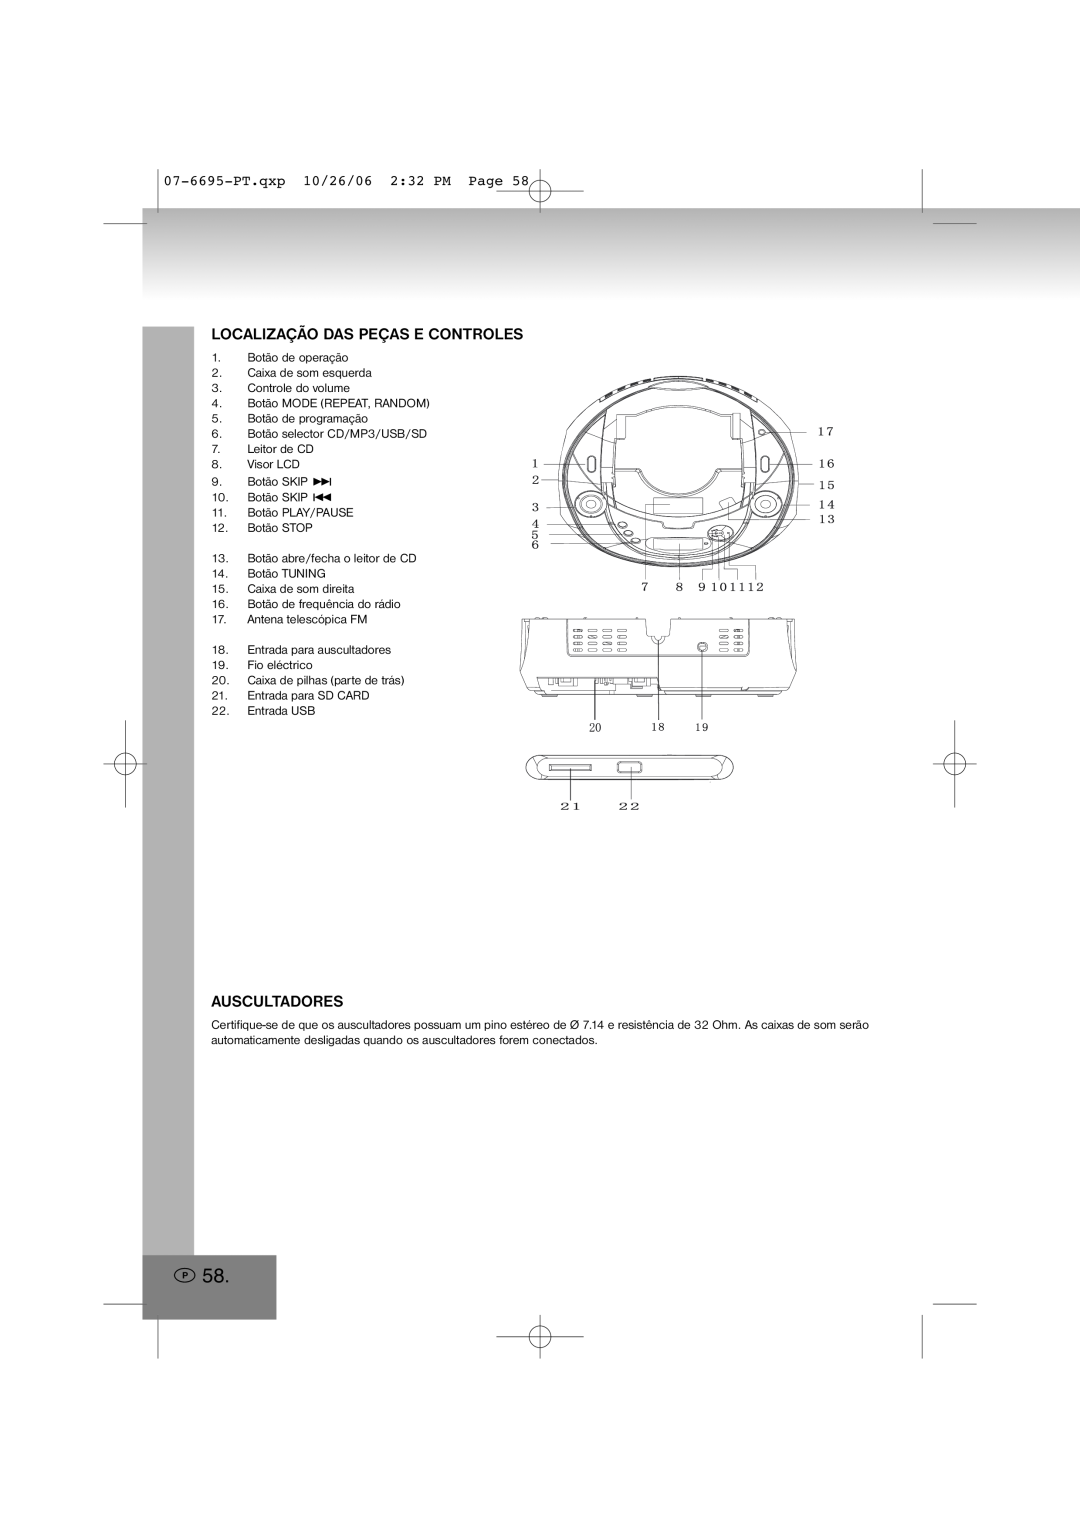 Elta manual Auscultadores, 07-6695-PT.qxp10/26/06 2 32 PM Page, Localização Das Peças E Controles 